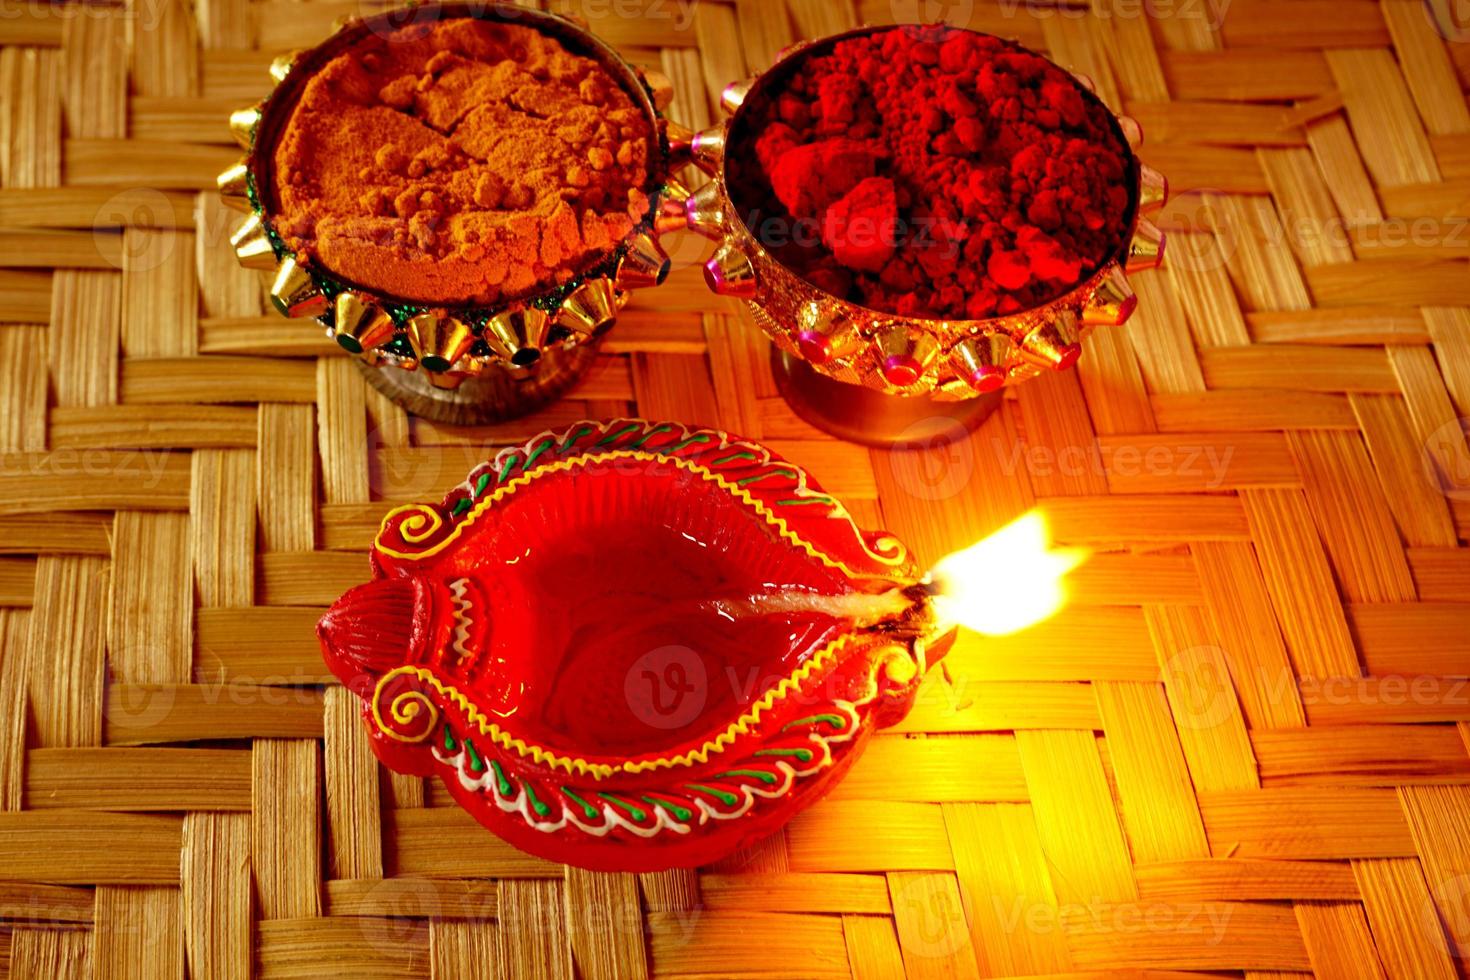 happy diwali - lámparas diya encendidas durante la celebración de diwali. linterna colorida y decorada se enciende en la noche en esta ocasión con rangoli de flores, dulces y regalos. foto